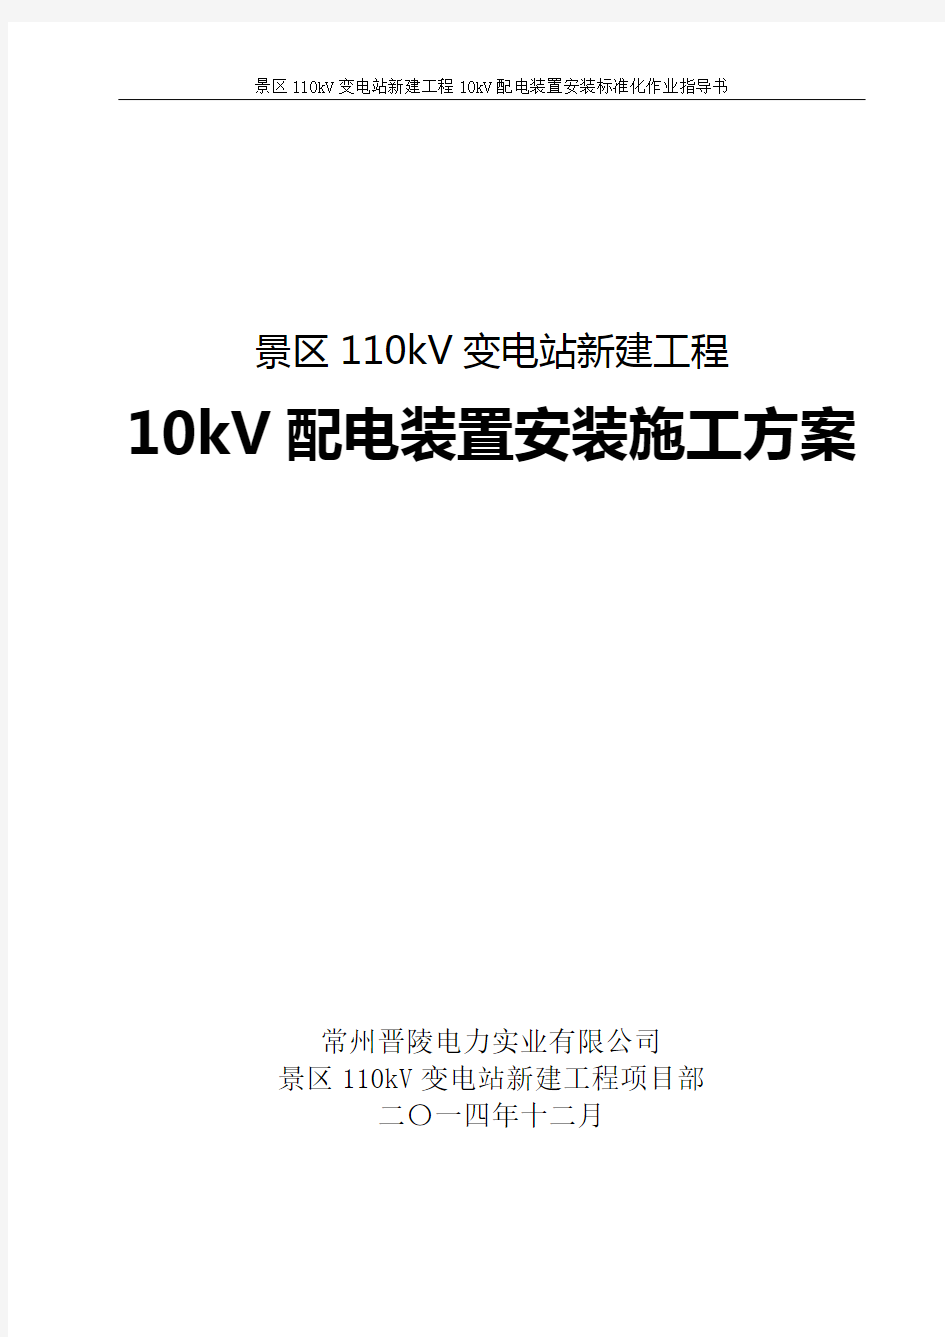 10kV配电装置安装标准化作业指导书